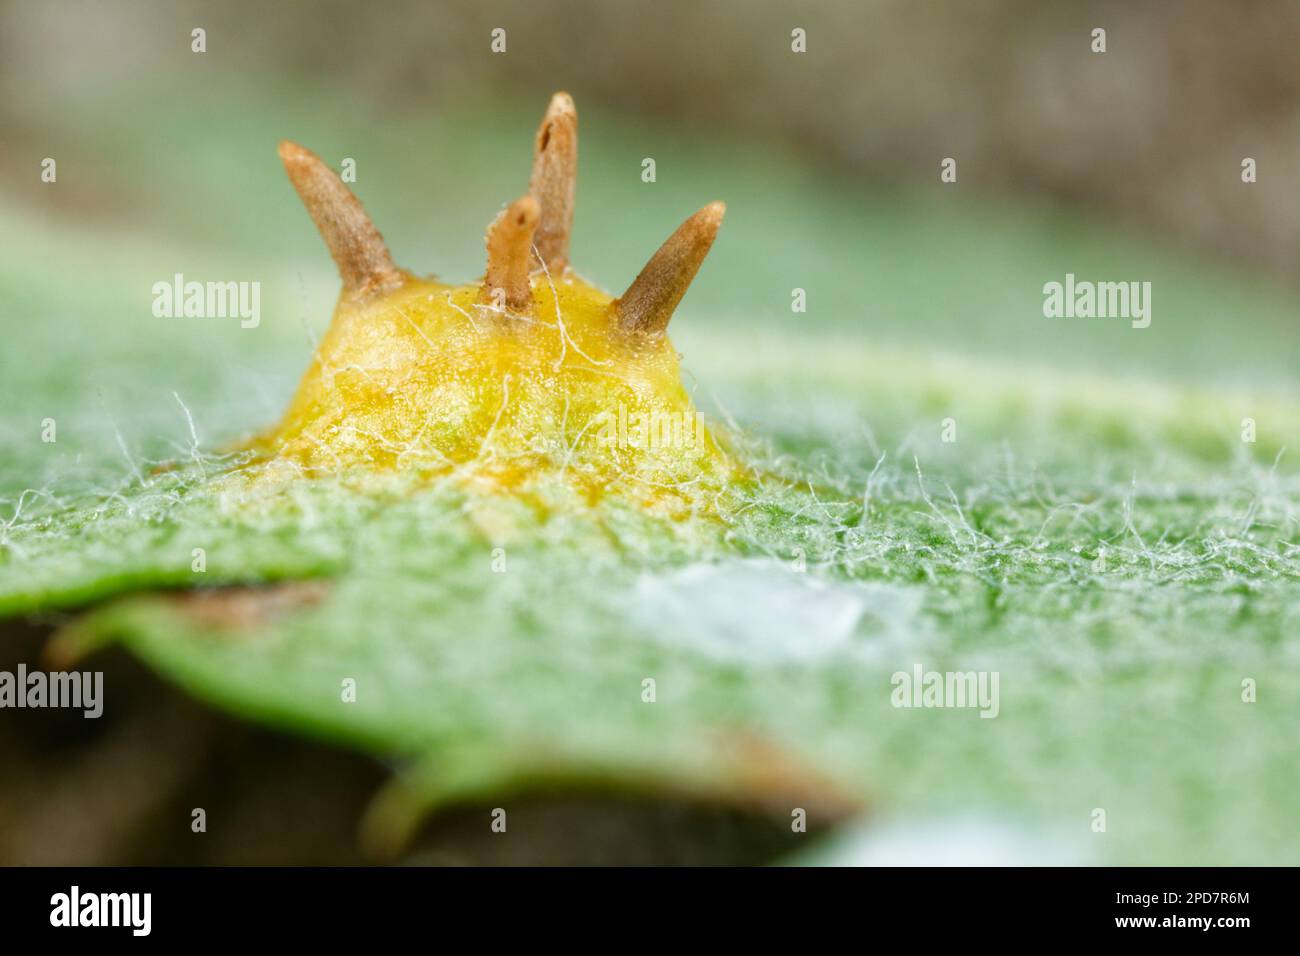 Rowan crown fungus (Gymnosporangium cornutum) Stock Photo